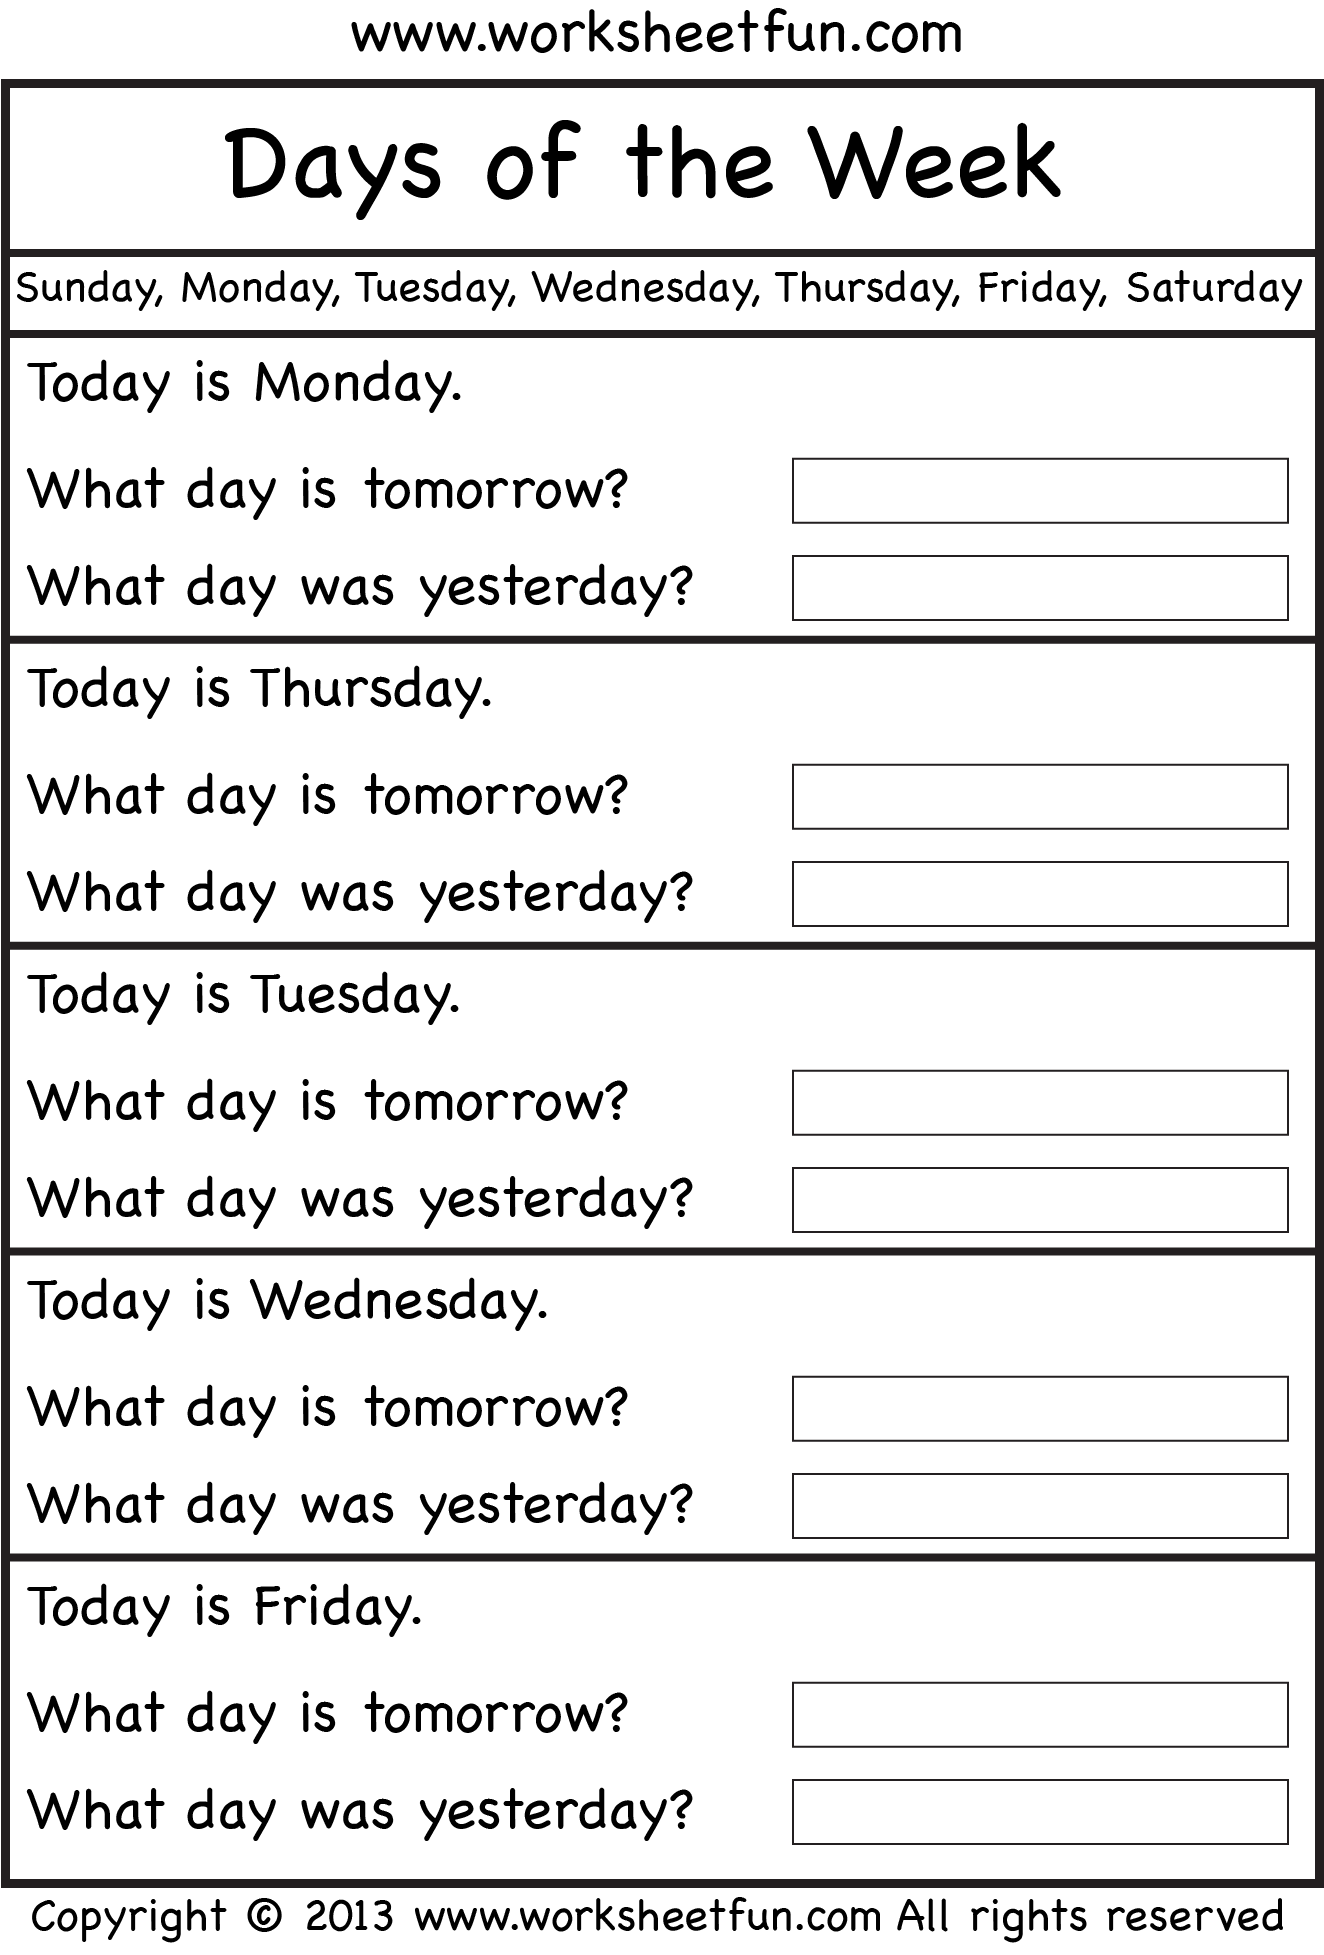 days-of-the-week-worksheet-free-printable-worksheets-worksheetfun